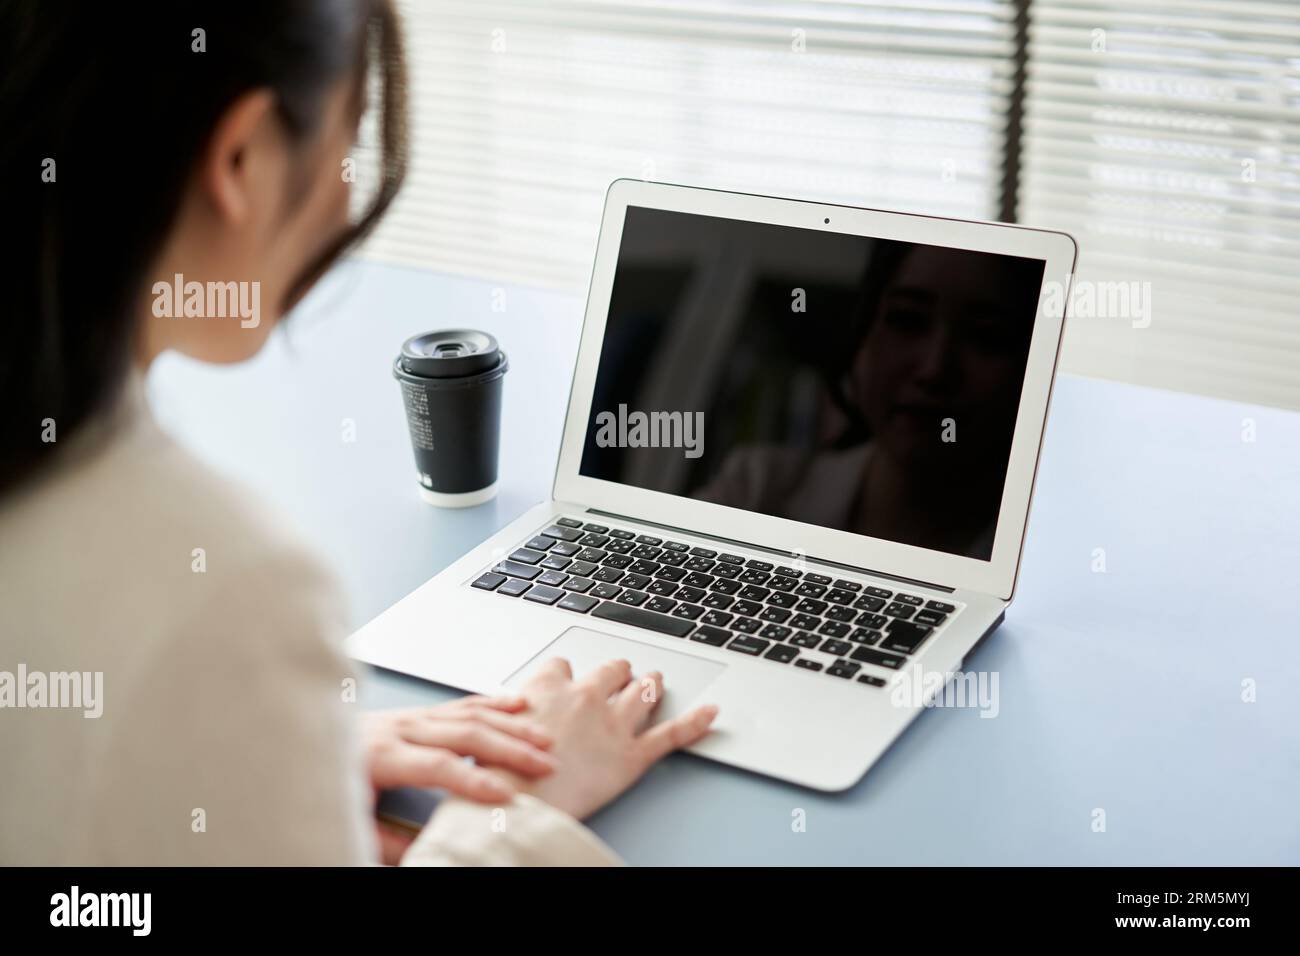 Asiatische Frau, die einen Laptop bedient Stockfoto